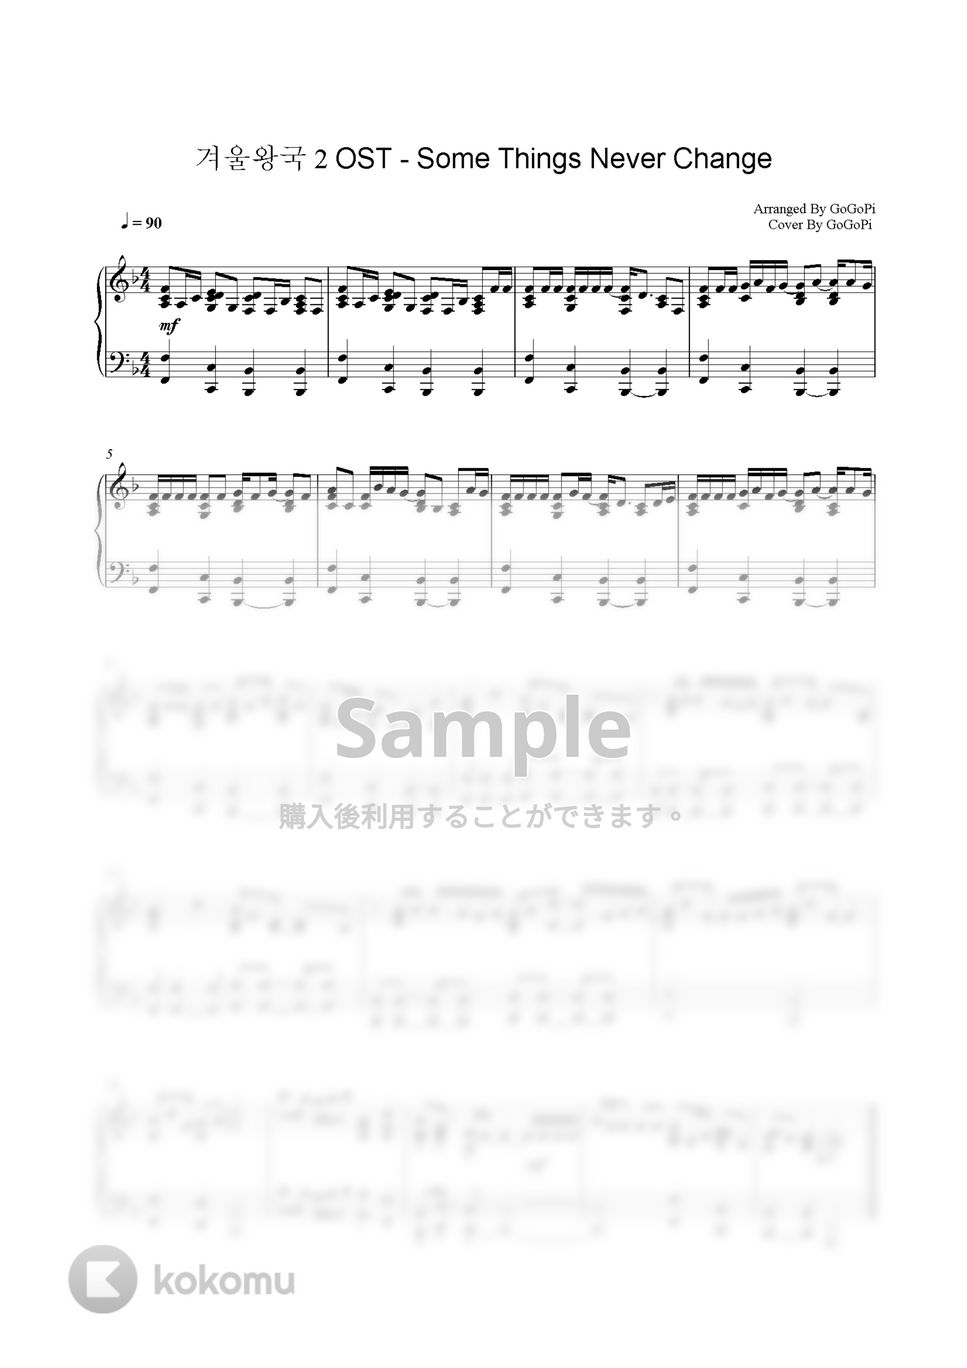 アナと雪の女王2 - Some Things Never Change(ずっとかわらないもの) (Piano Ver.) by GoGoPiano